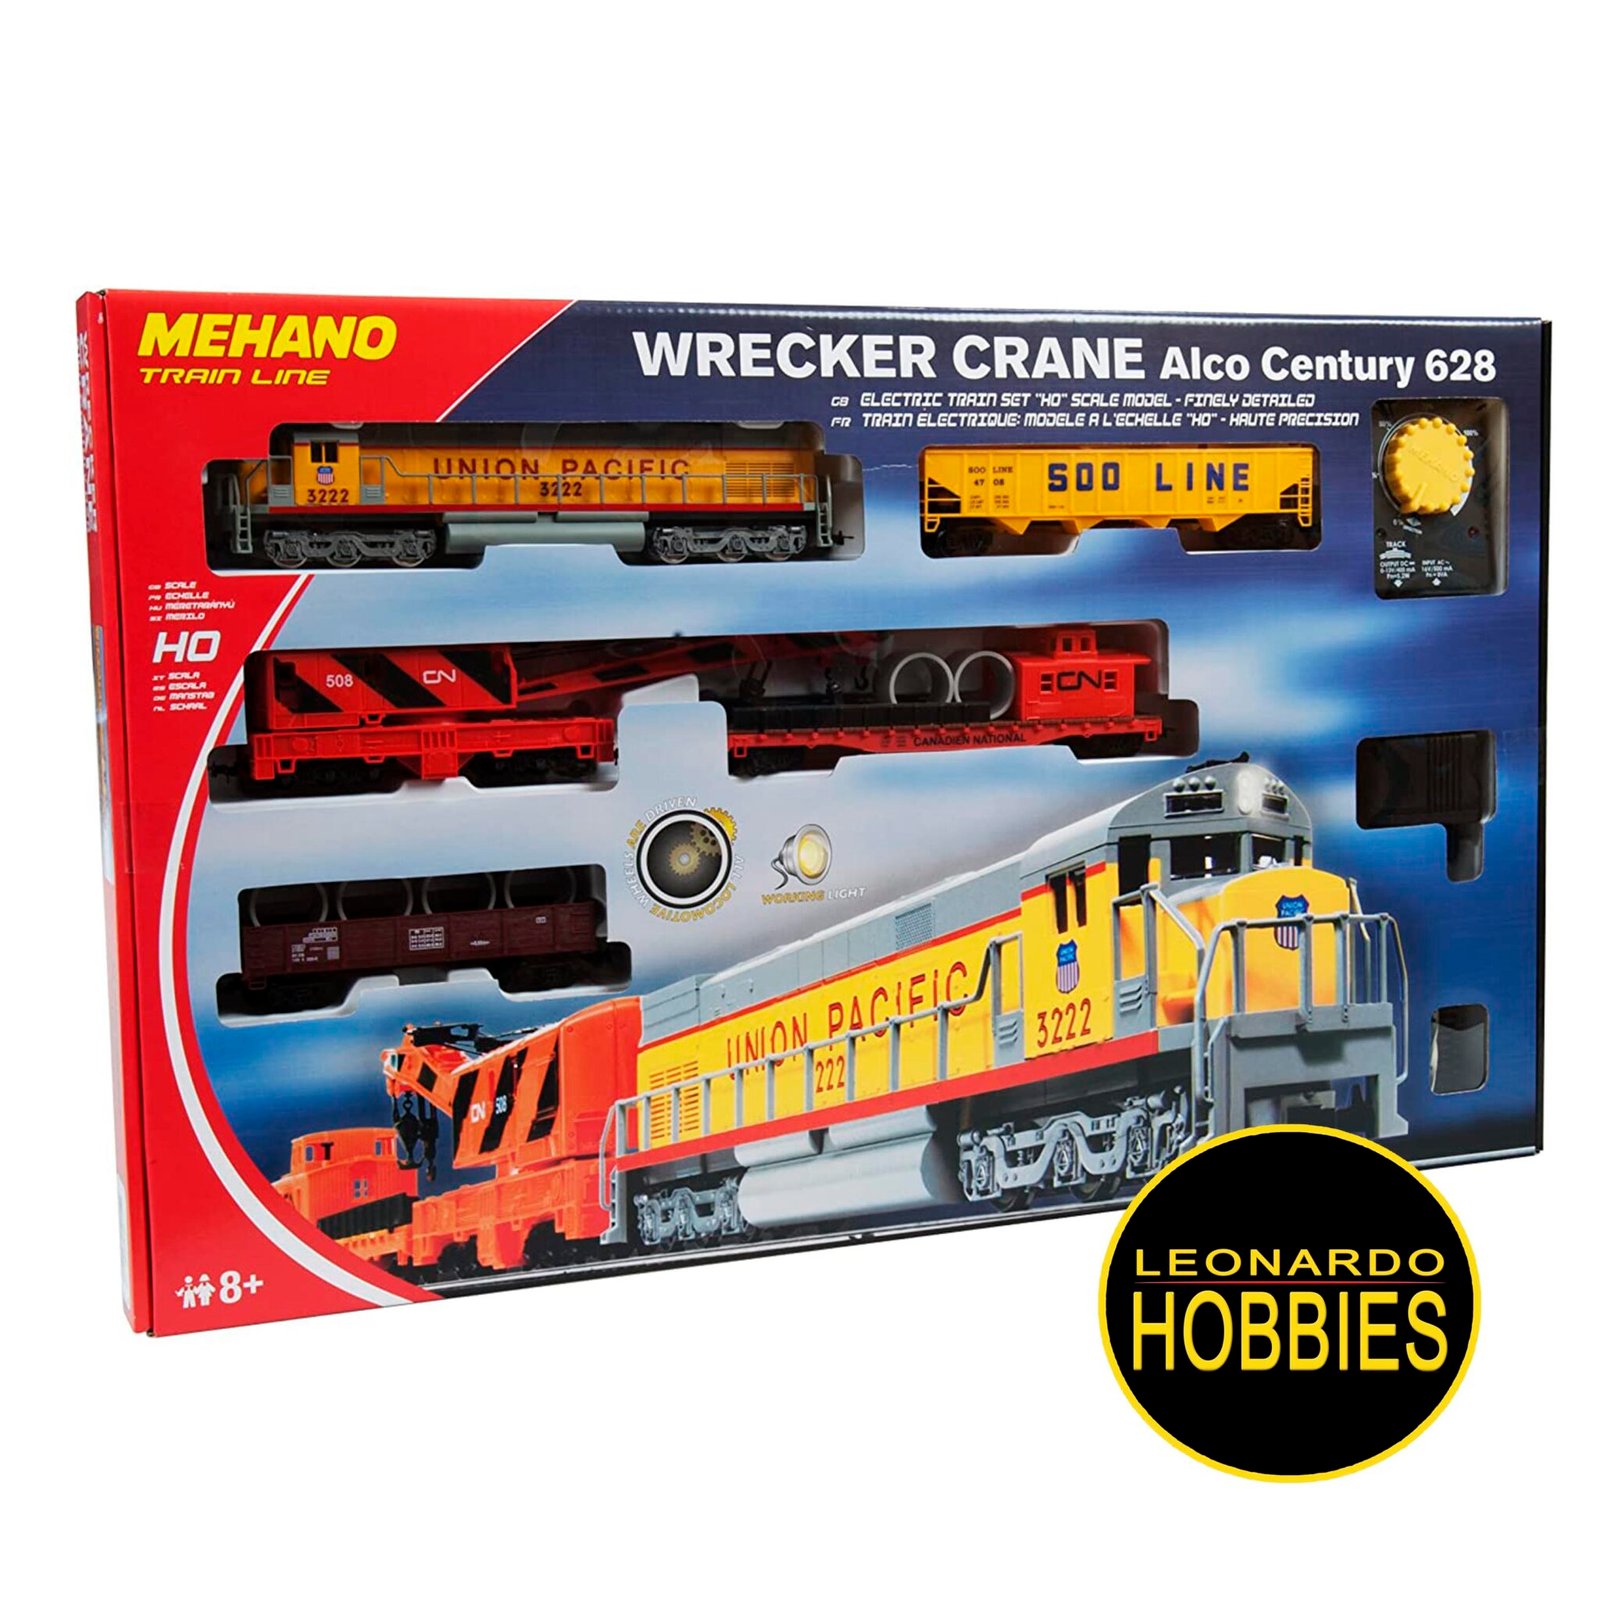 Caja Basica Wrecker Crane Alco Centruy 628 Mehano T741 – Leonardo Hobbies